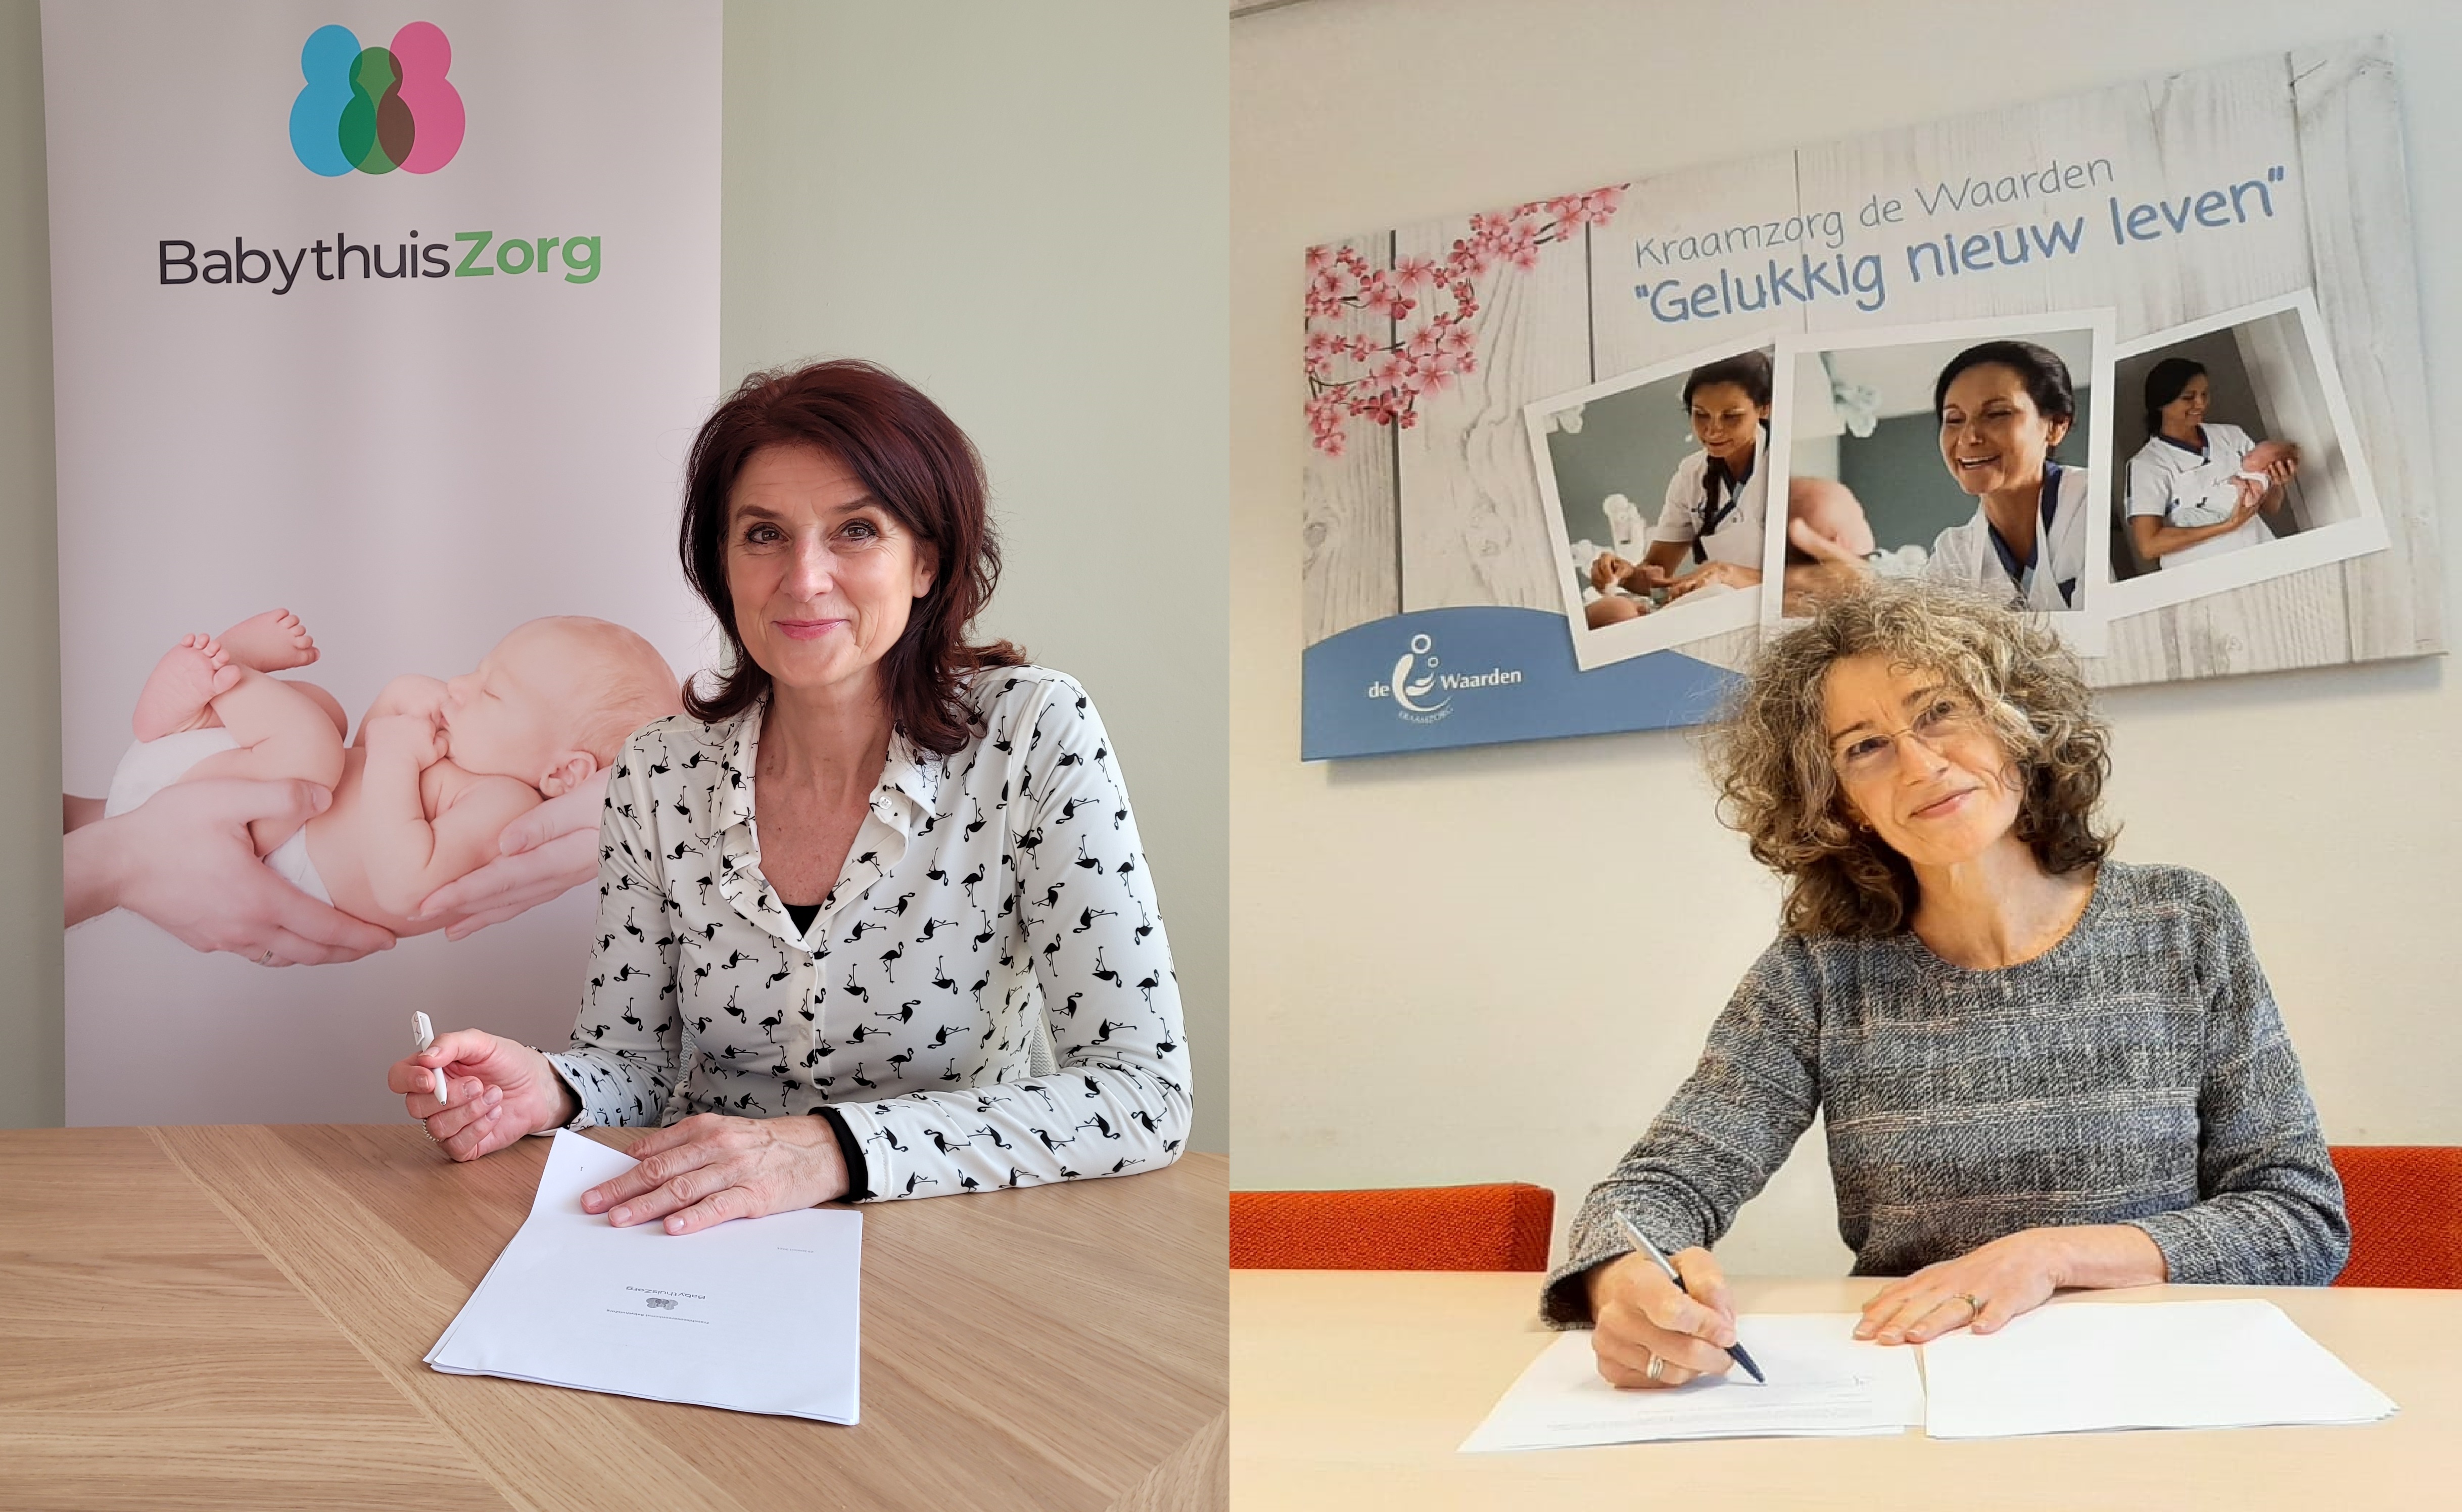 Lindy van Breda Vriesman BabythuisZorg en Jacqueline Dorscheidt De Waarden tekenen de franchiseovereenkomst voor BabythuisZorg 